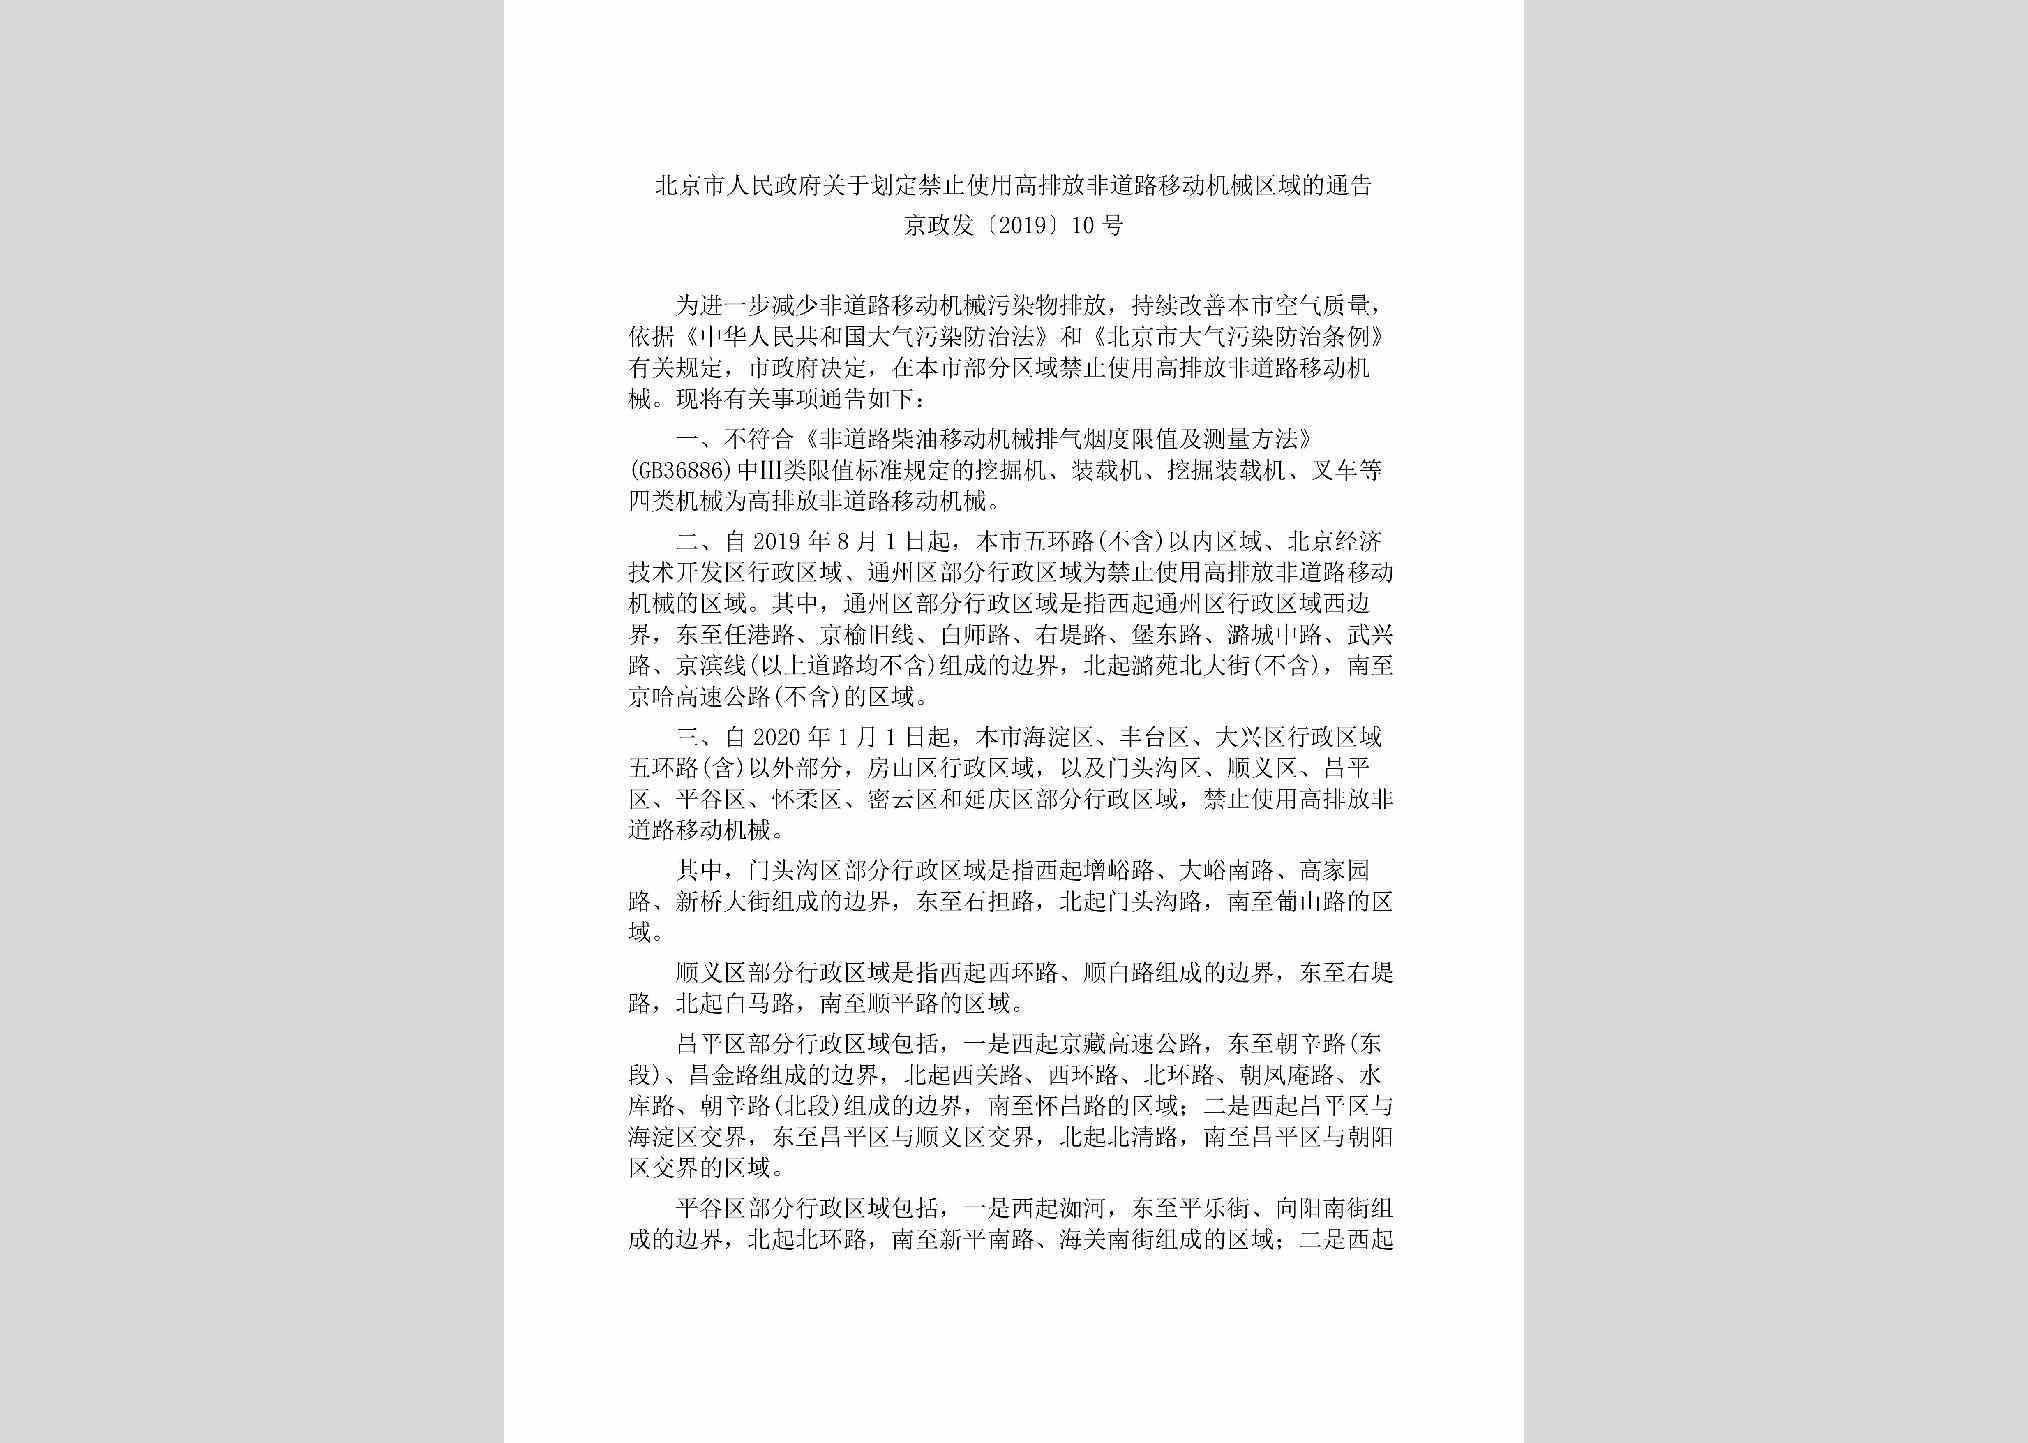 京政发[2019]10号：北京市人民政府关于划定禁止使用高排放非道路移动机械区域的通告